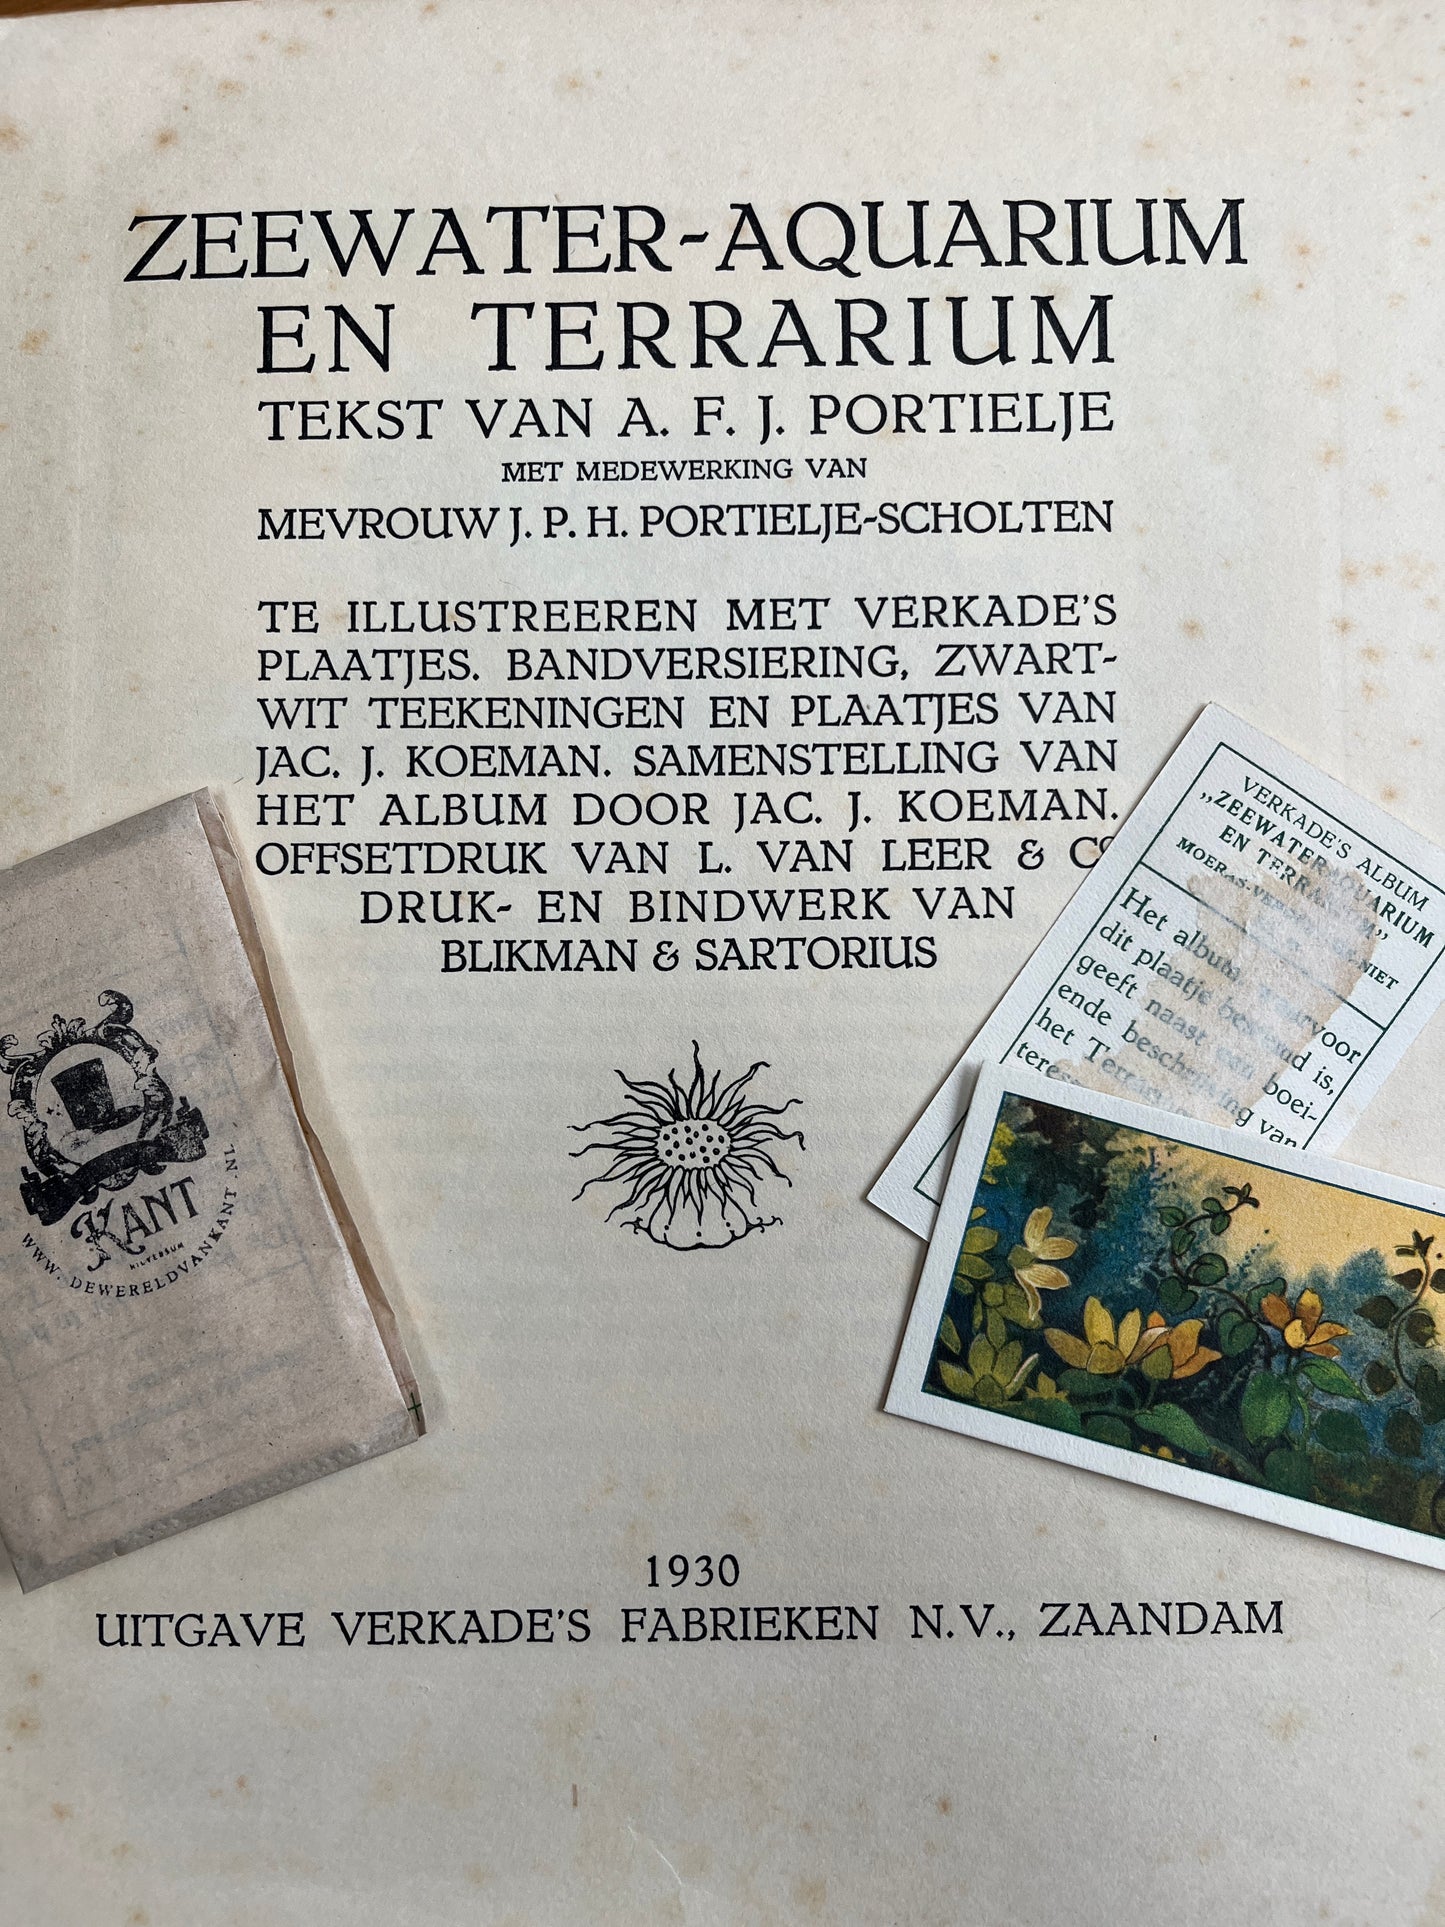 6 Verkade pictures Seawater aquarium and terrarium 1930 (121-126)